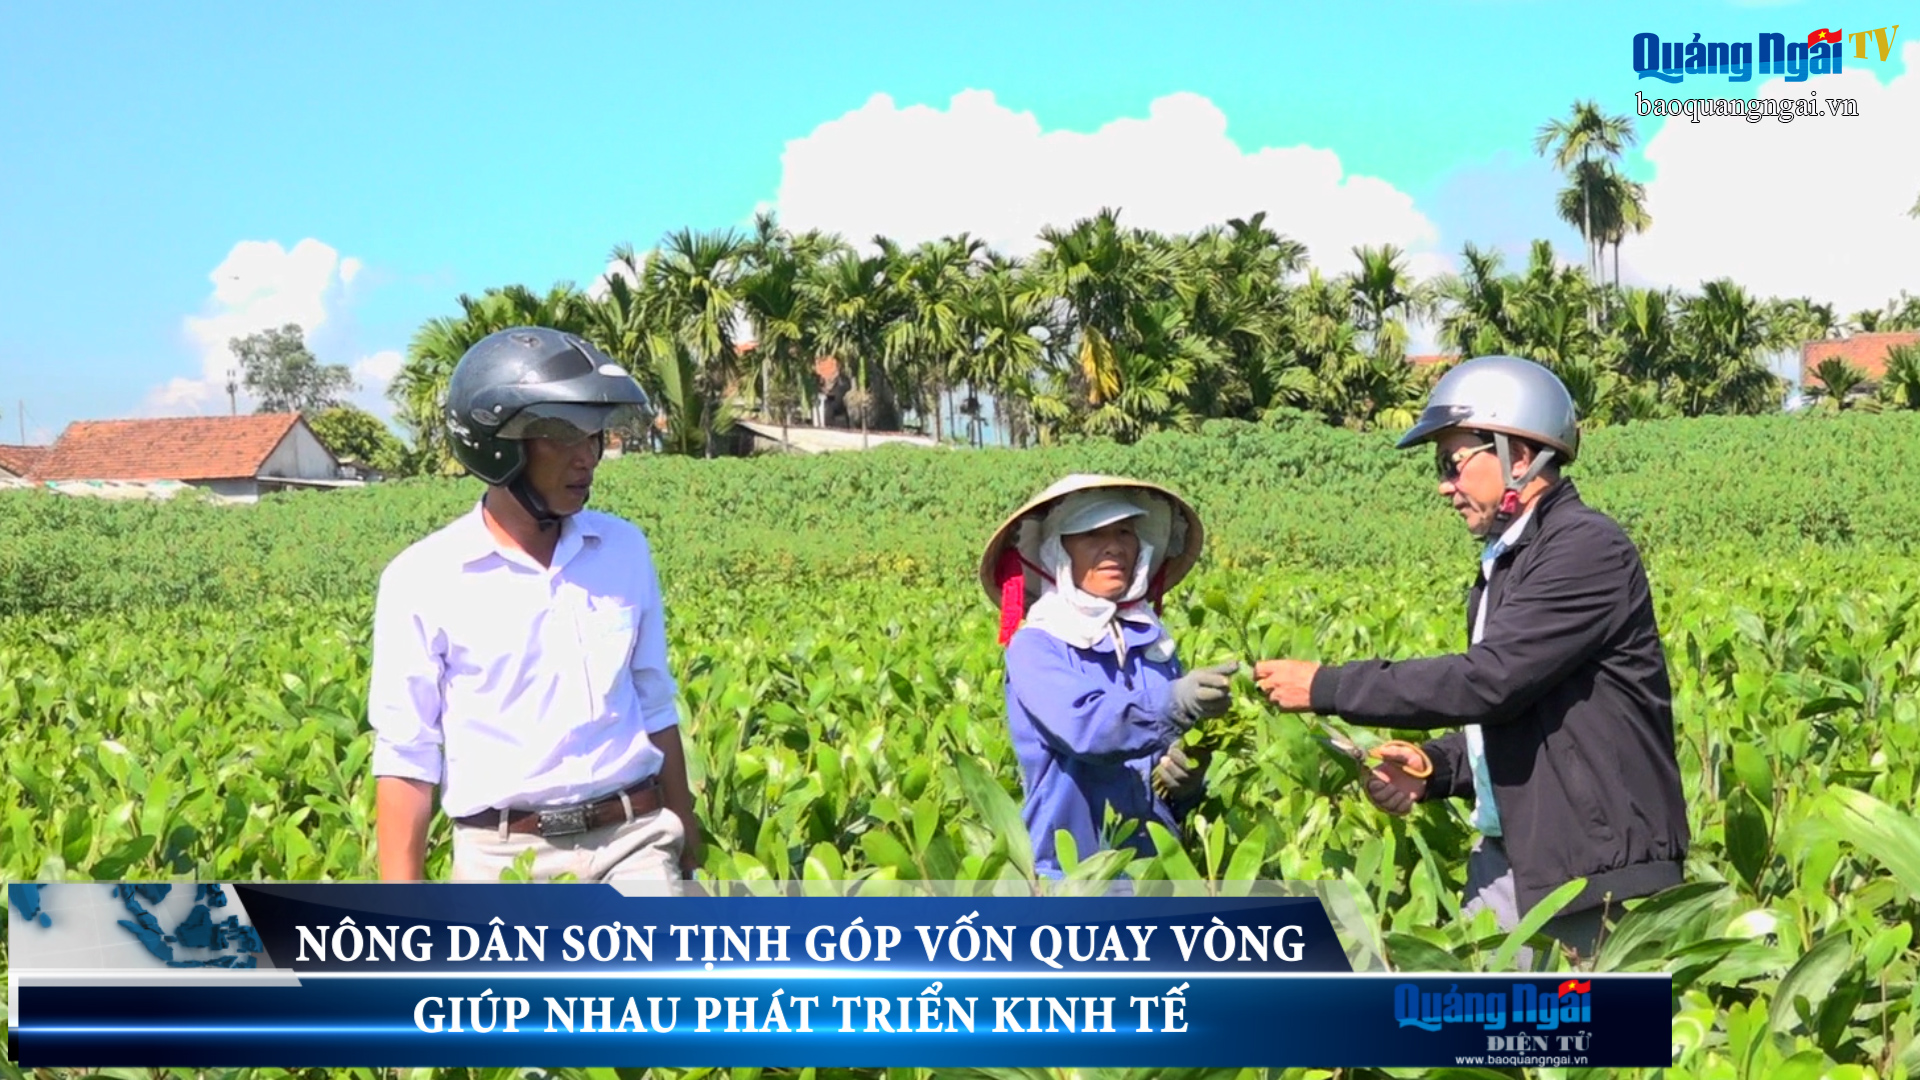 Video: Nông dân Sơn Tịnh góp vốn quay vòng, giúp nhau phát triển kinh tế